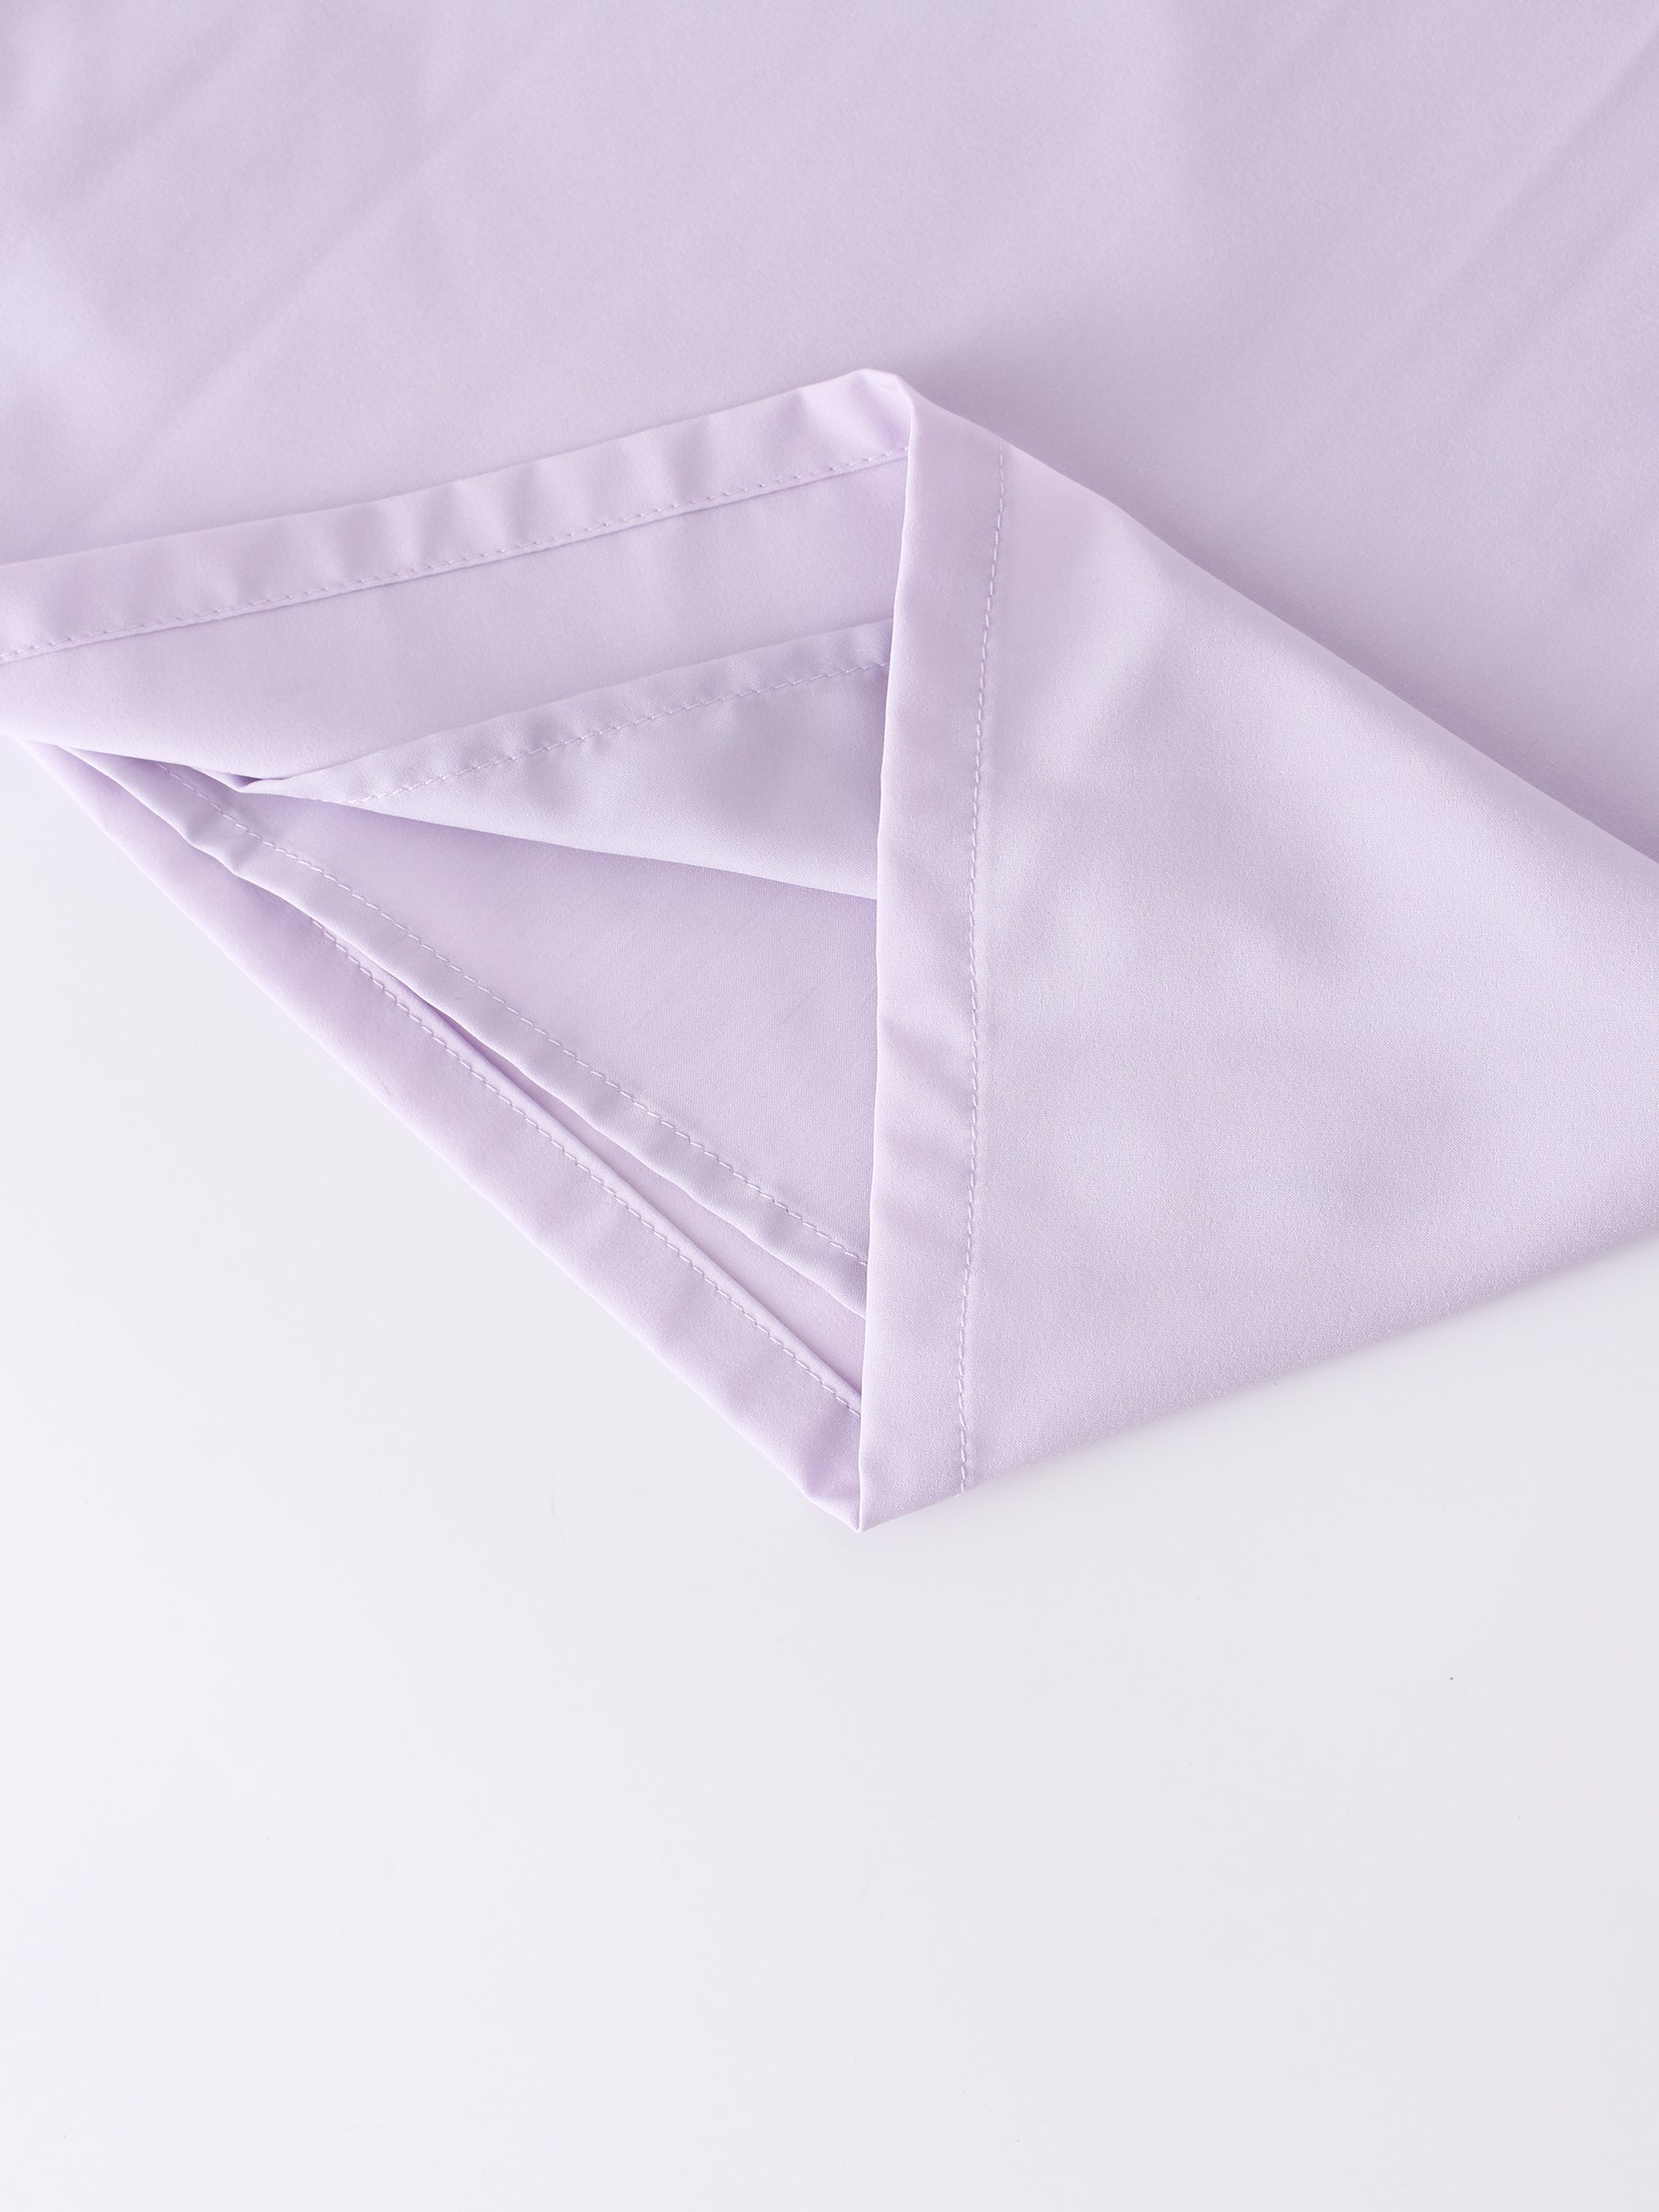 Pintuck Pocket Skirt-Lavender